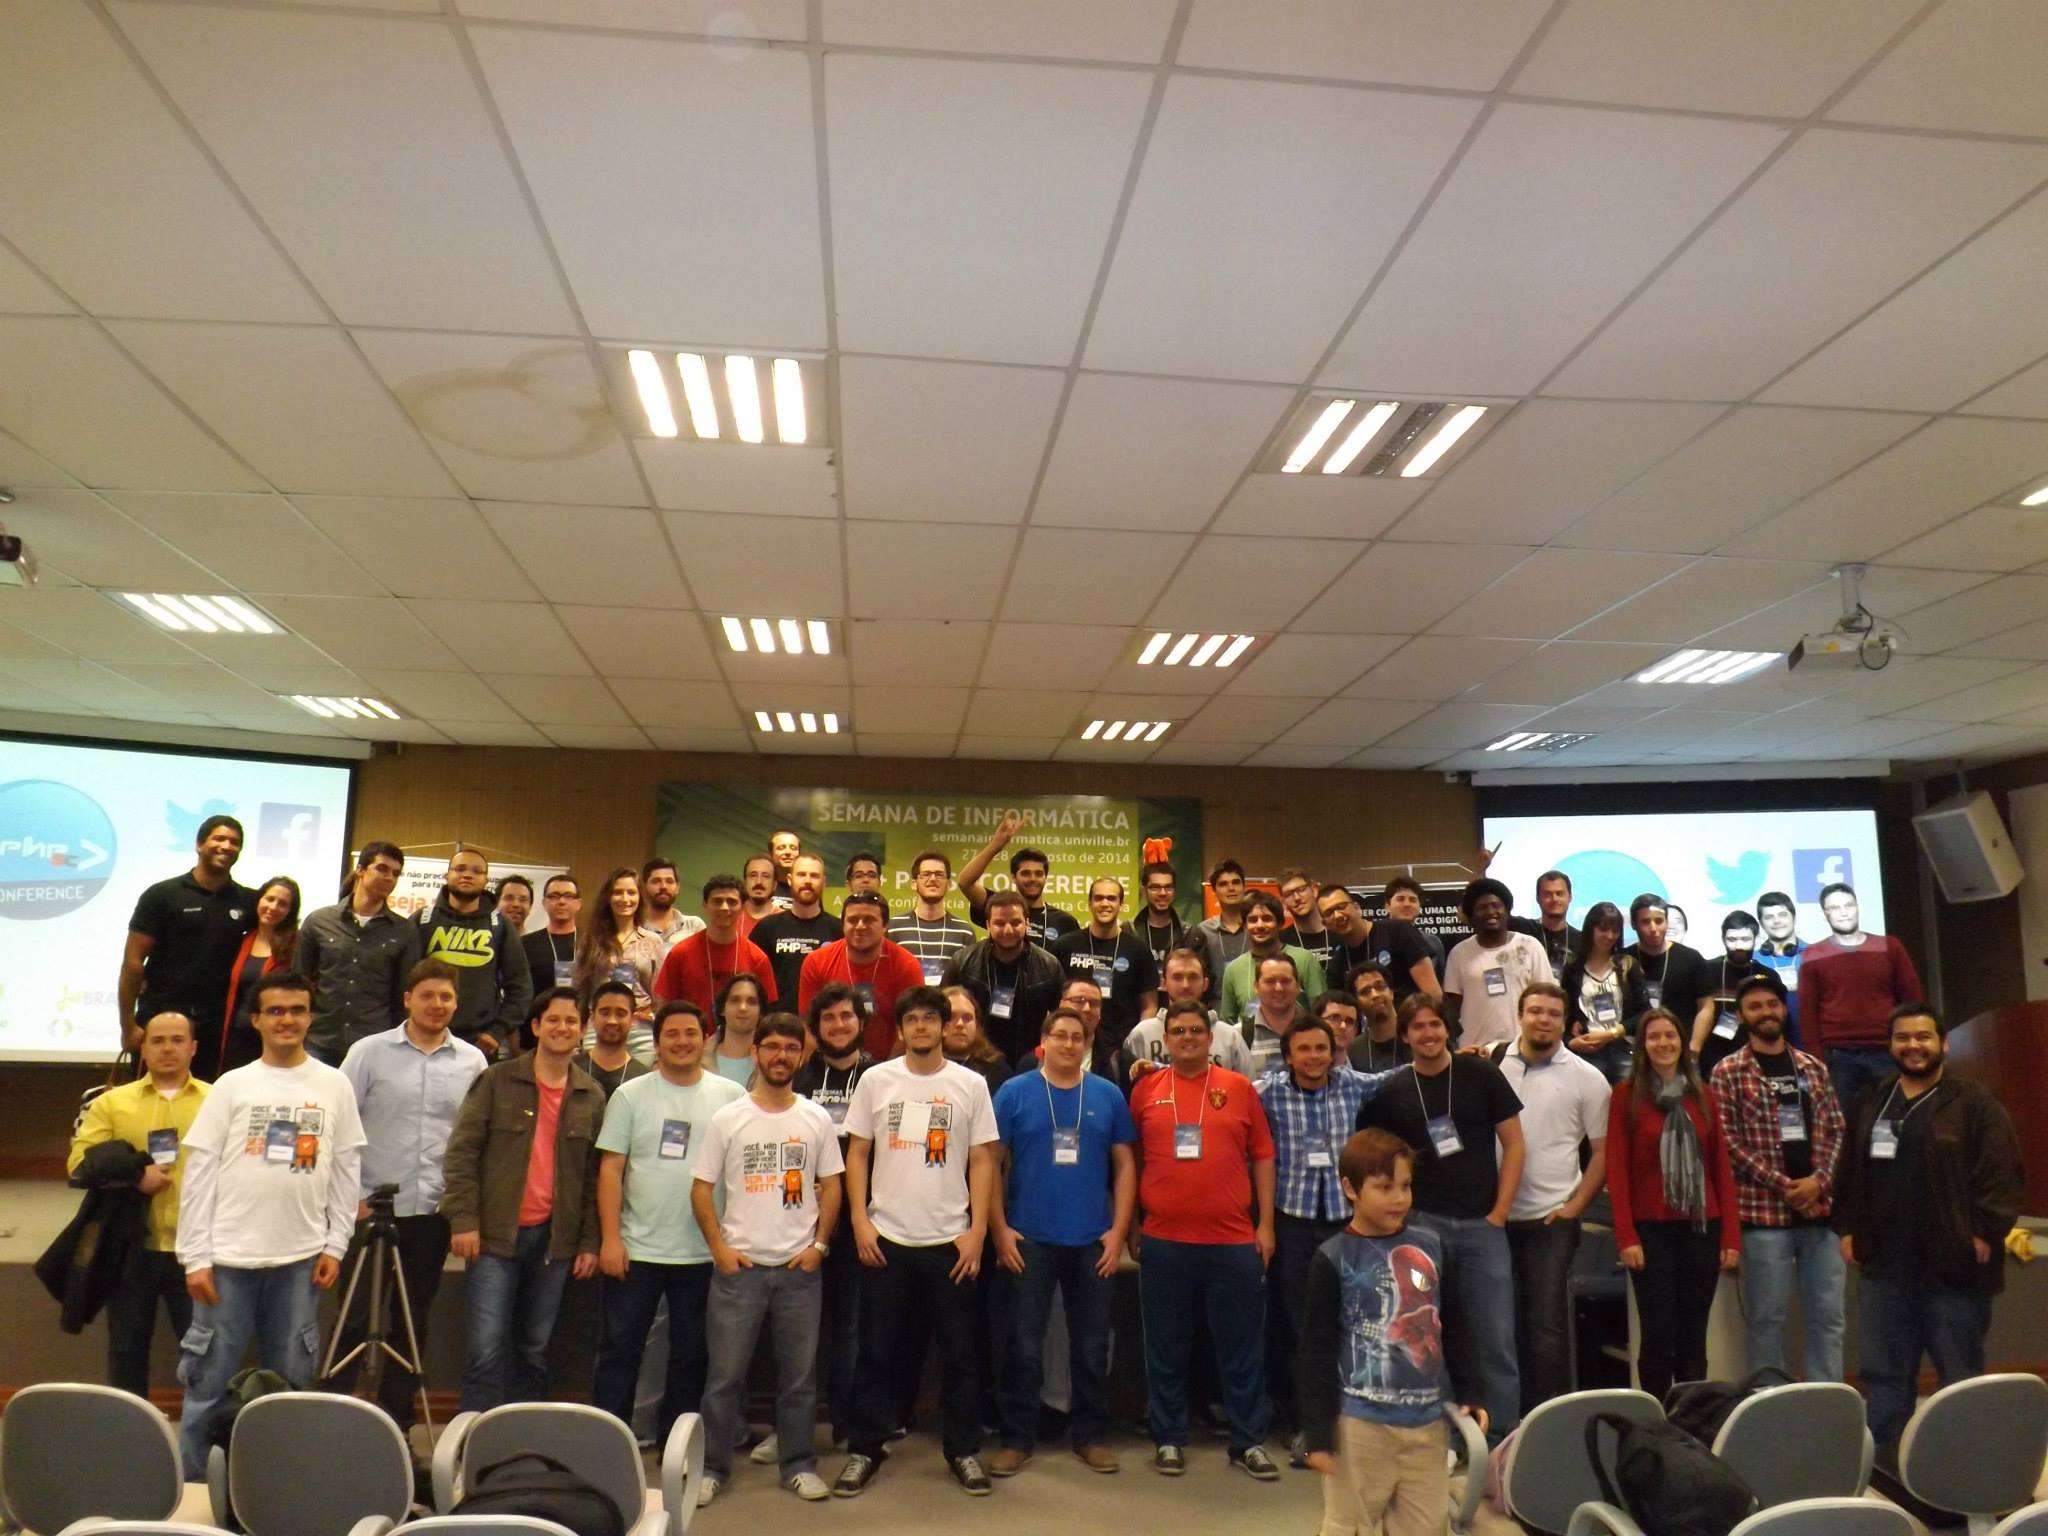 Foto dos participantes do PHPSC Conference 2014 na Univille em Joinville